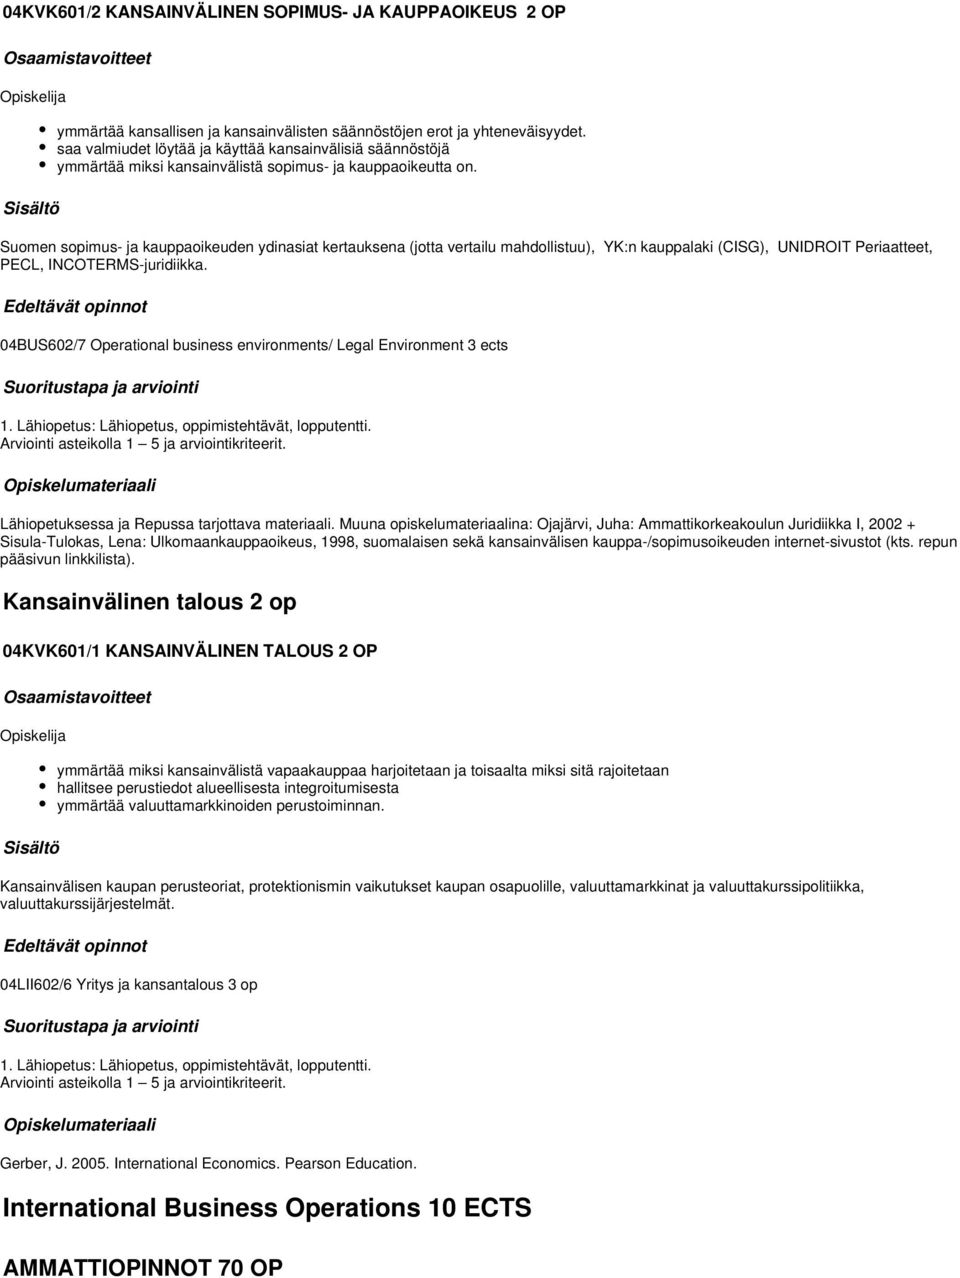 Suomen sopimus- ja kauppaoikeuden ydinasiat kertauksena (jotta vertailu mahdollistuu), YK:n kauppalaki (CISG), UNIDROIT Periaatteet, PECL, INCOTERMS-juridiikka.